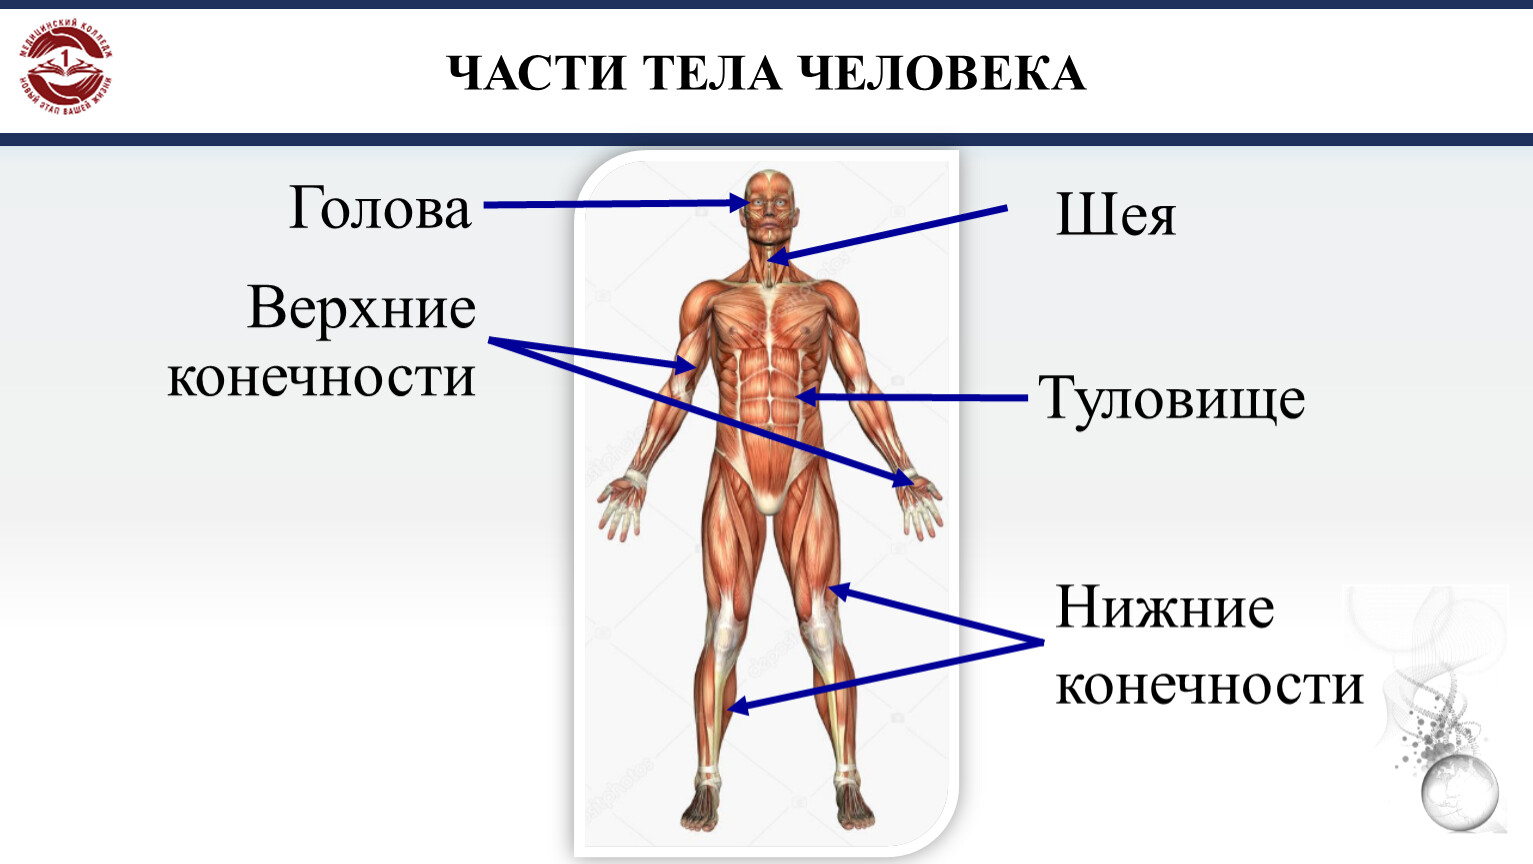 Тела тела тела дата выхода. Части тела человека. Части тела человека названия. Название человеческих частей тела. Анатомия человека части тела названия.